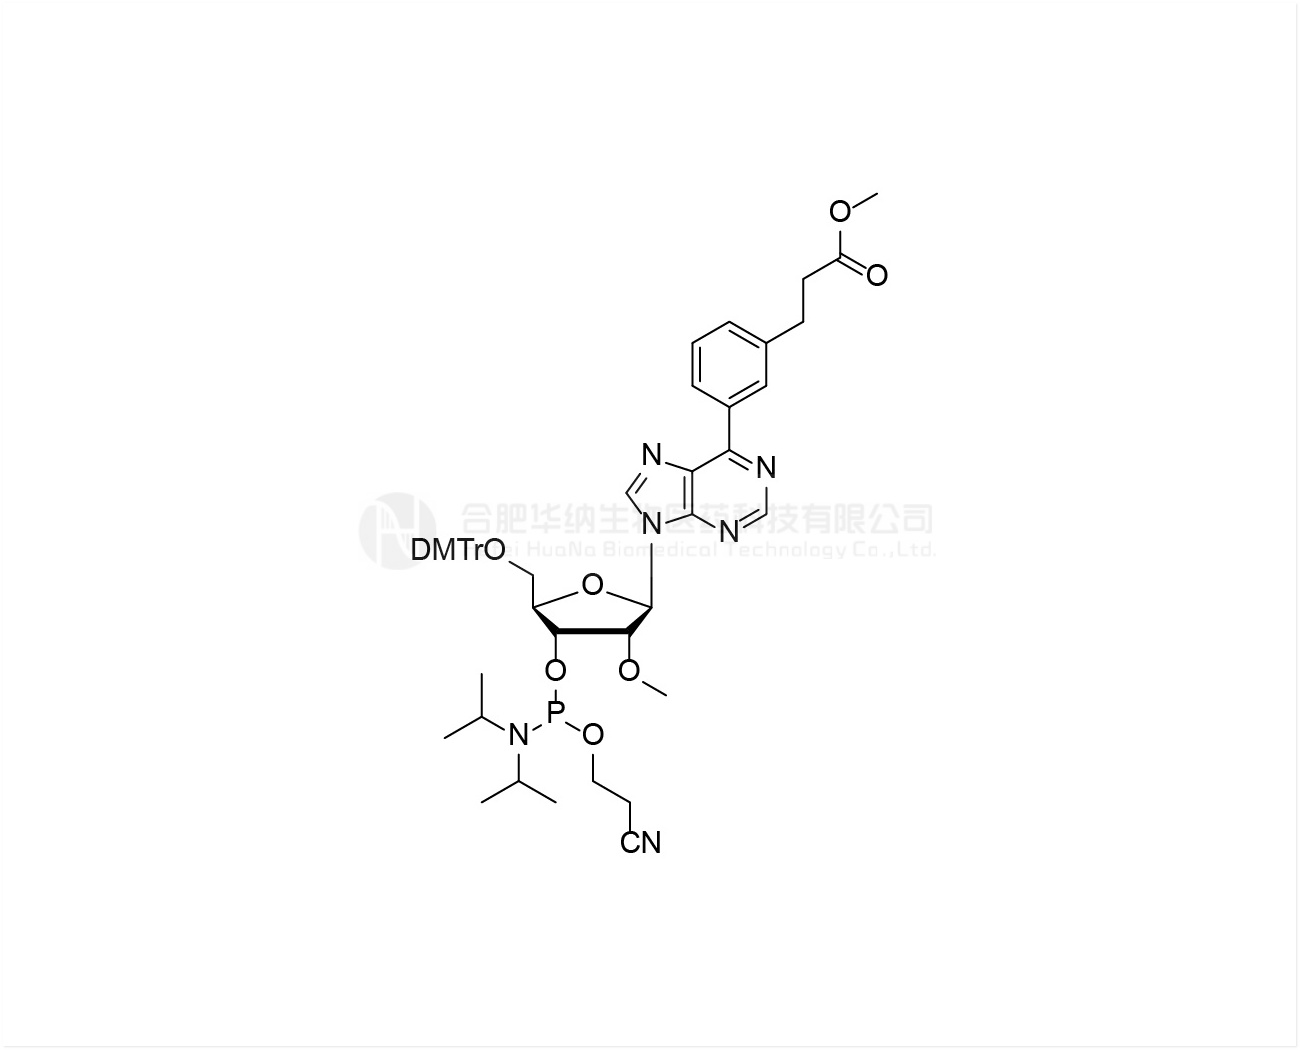 DMTr-2'-O-Me-6-Deamino-6-(m-benzenepropanoic acid methyl ester)-rA-3'-CE-Phosphoramidite